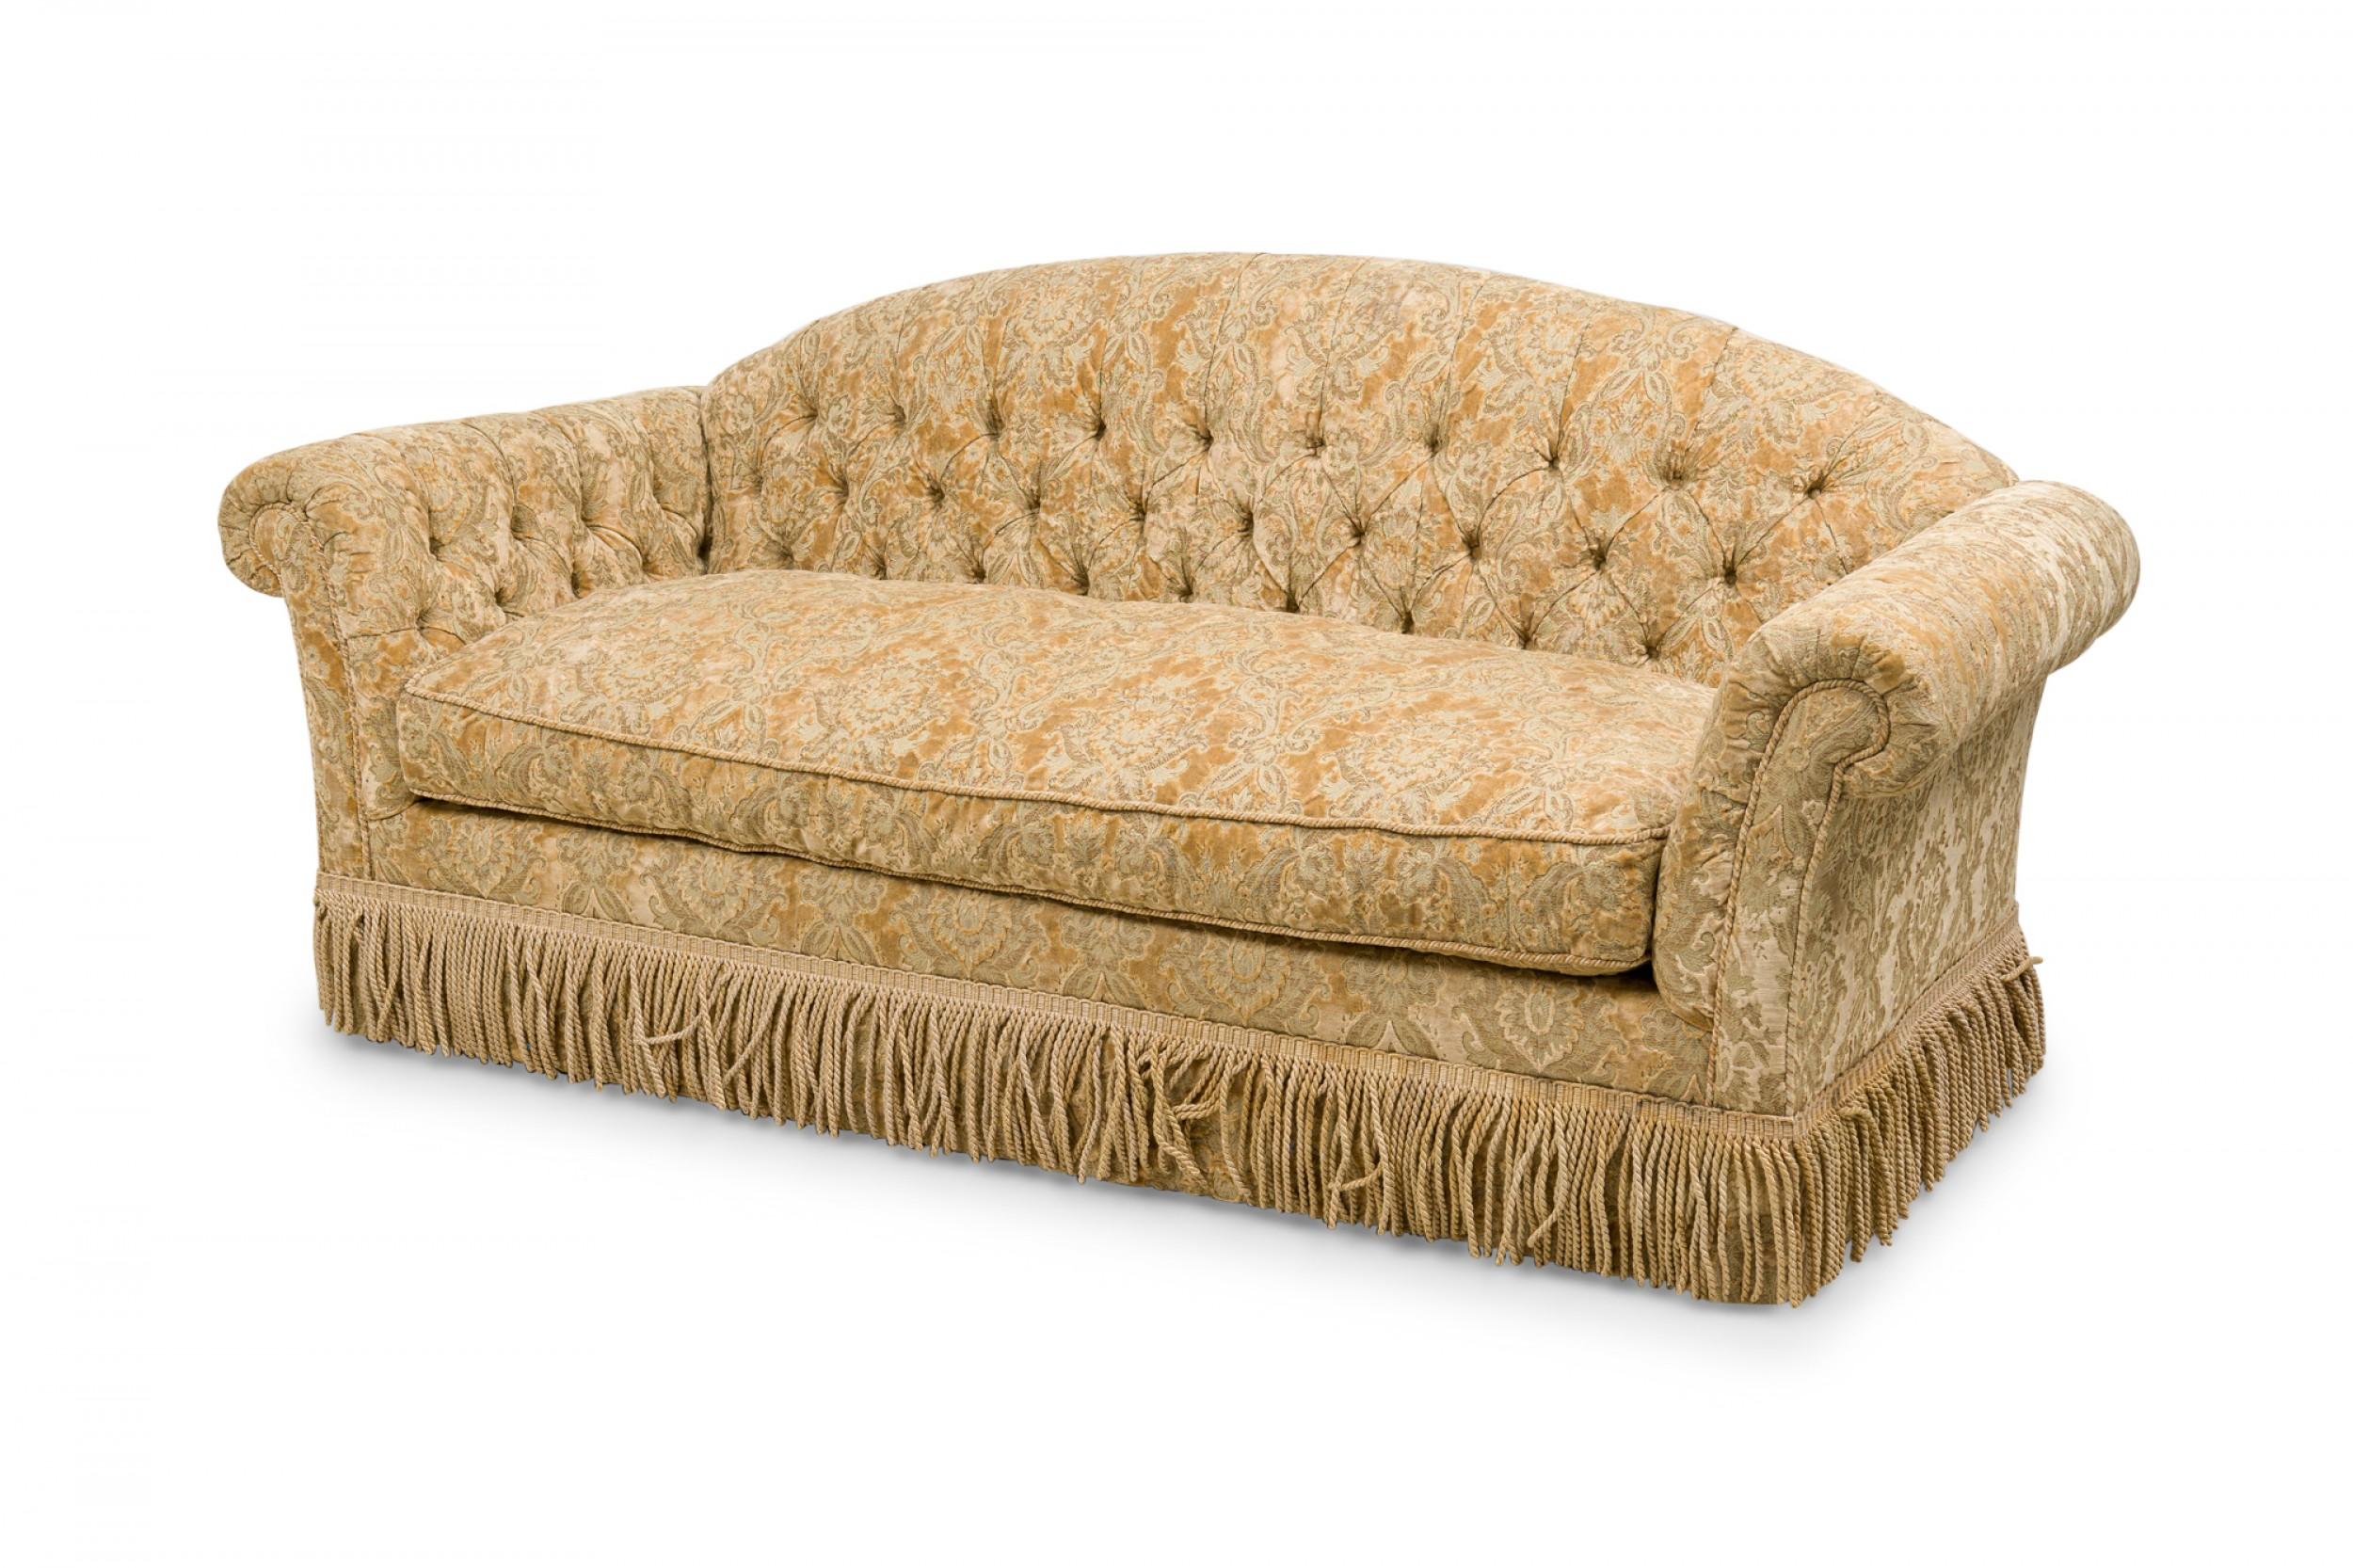 Englisches Sofa im viktorianischen Stil mit abgerundeter, getufteter Rückenlehne und verschnörkelten Armlehnen, gepolstert mit goldenem Samtdamast und einem passenden Rock mit Seilfransen.